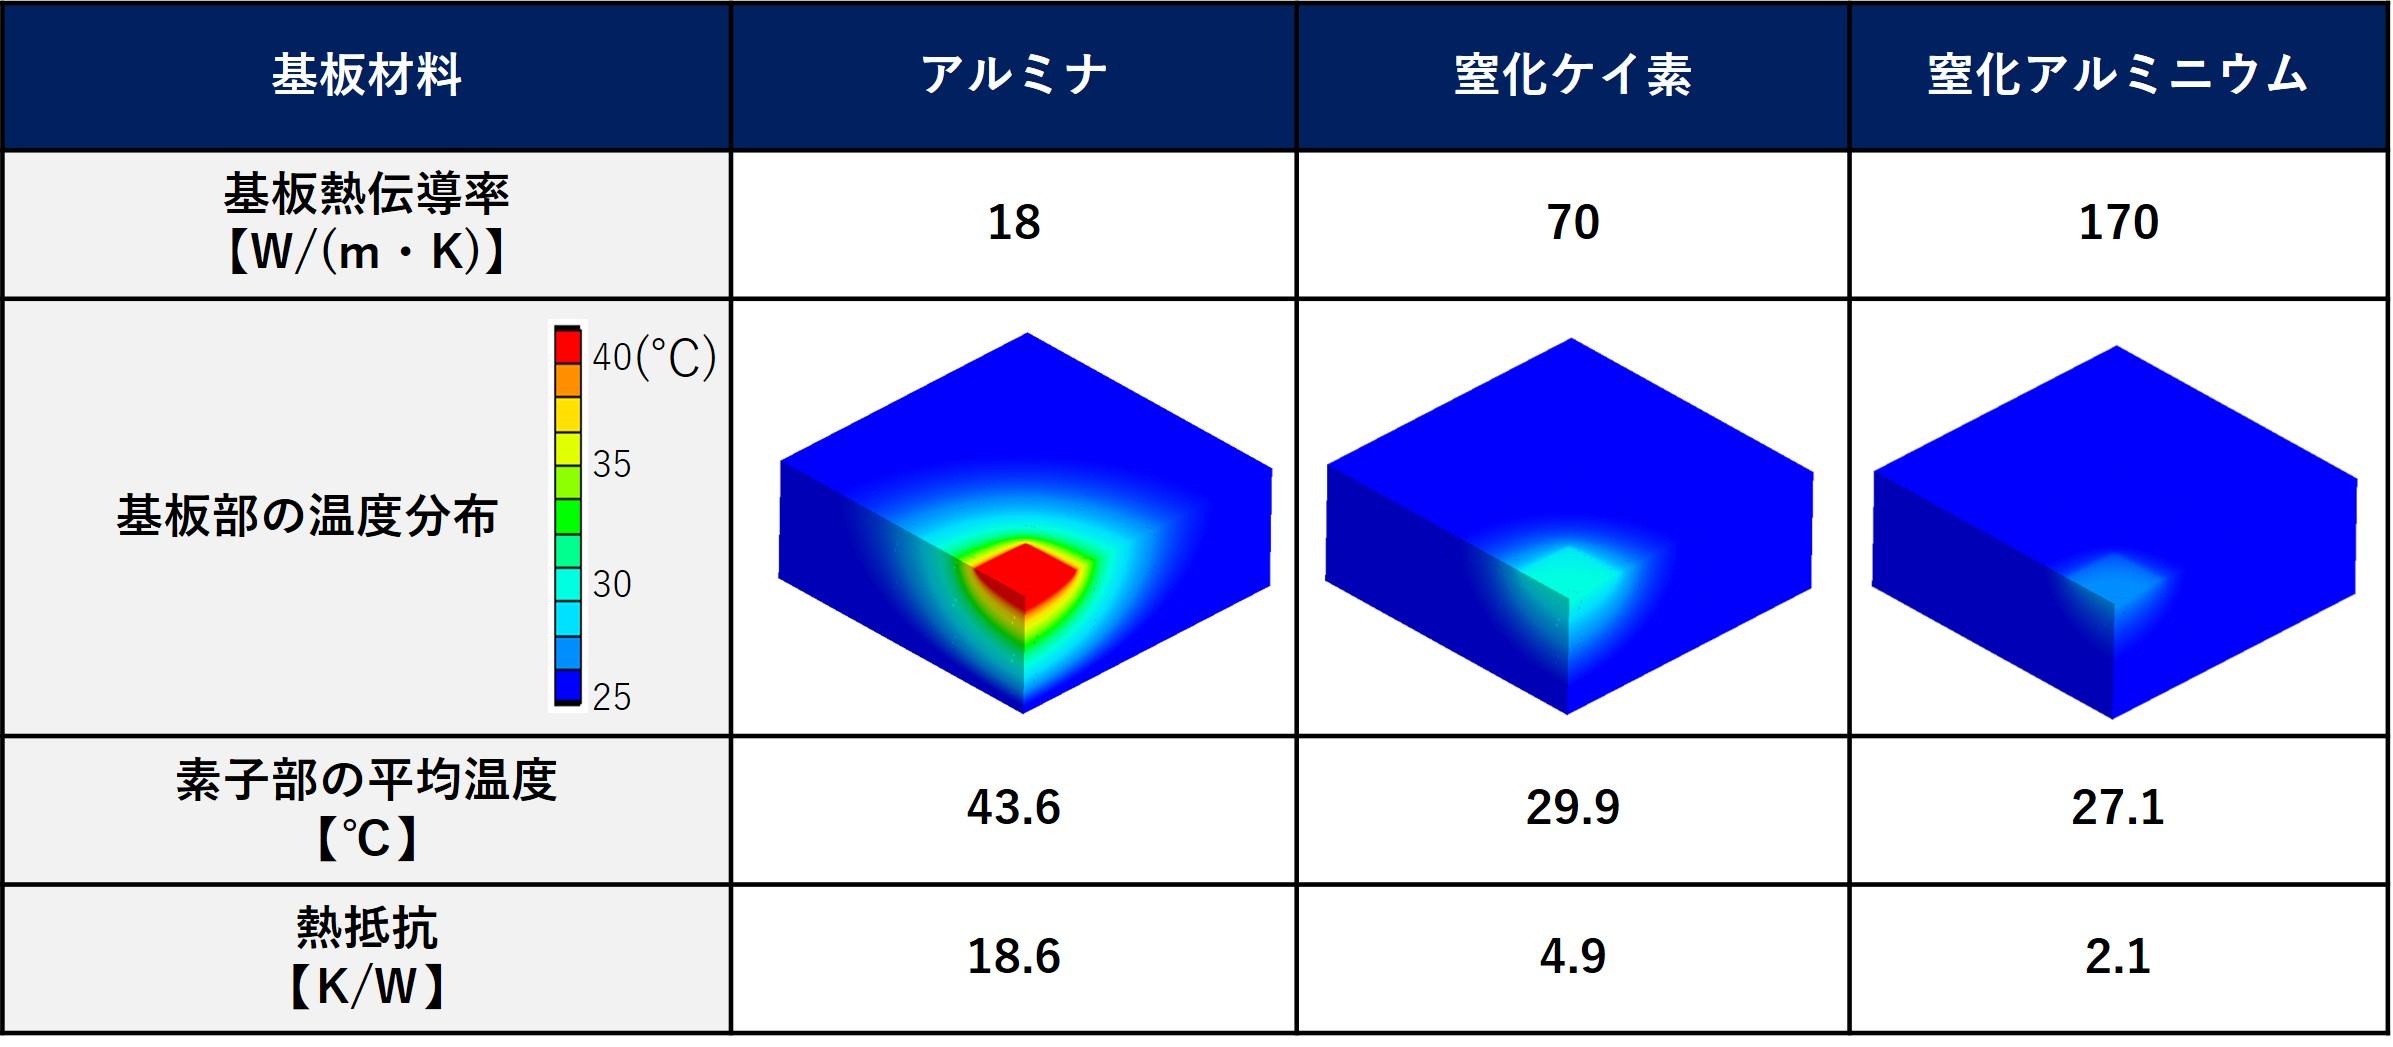 セラミック材料間の熱伝導シミュレーション比較結果